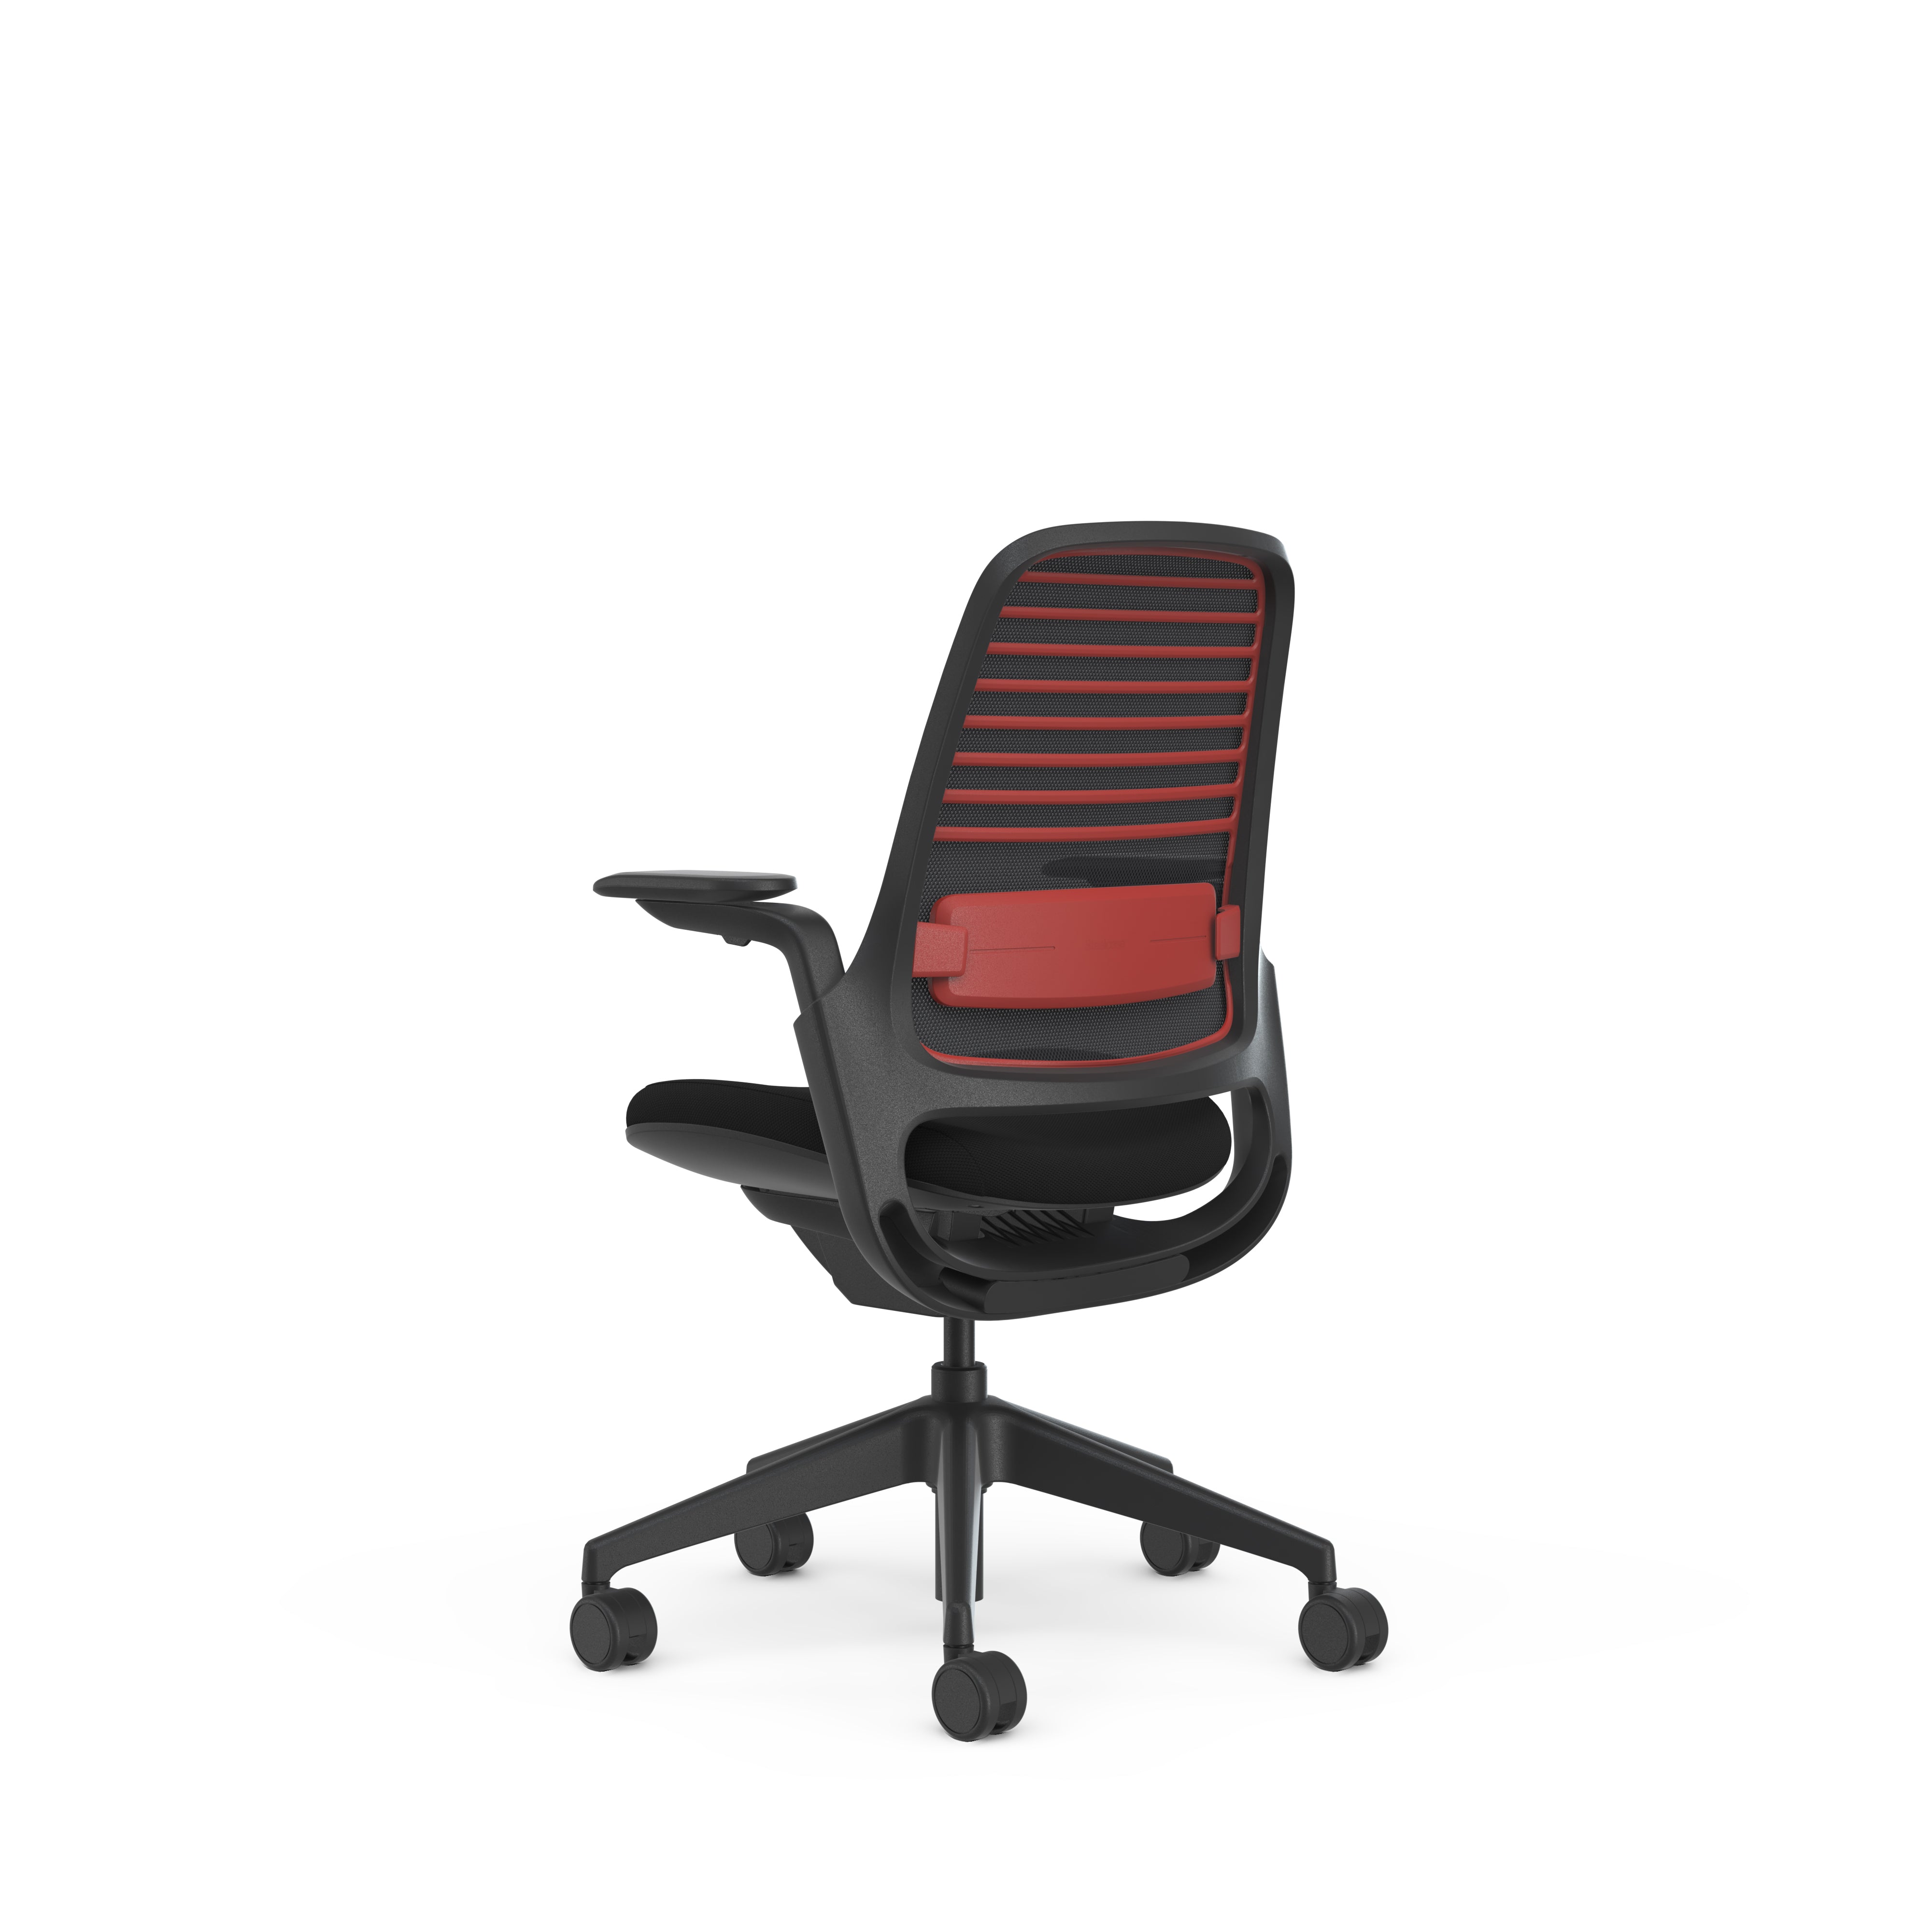 Meshback 3D Microknit Scarlet; Seat Cogent Connect Licorice; Frame Scarlet & Black